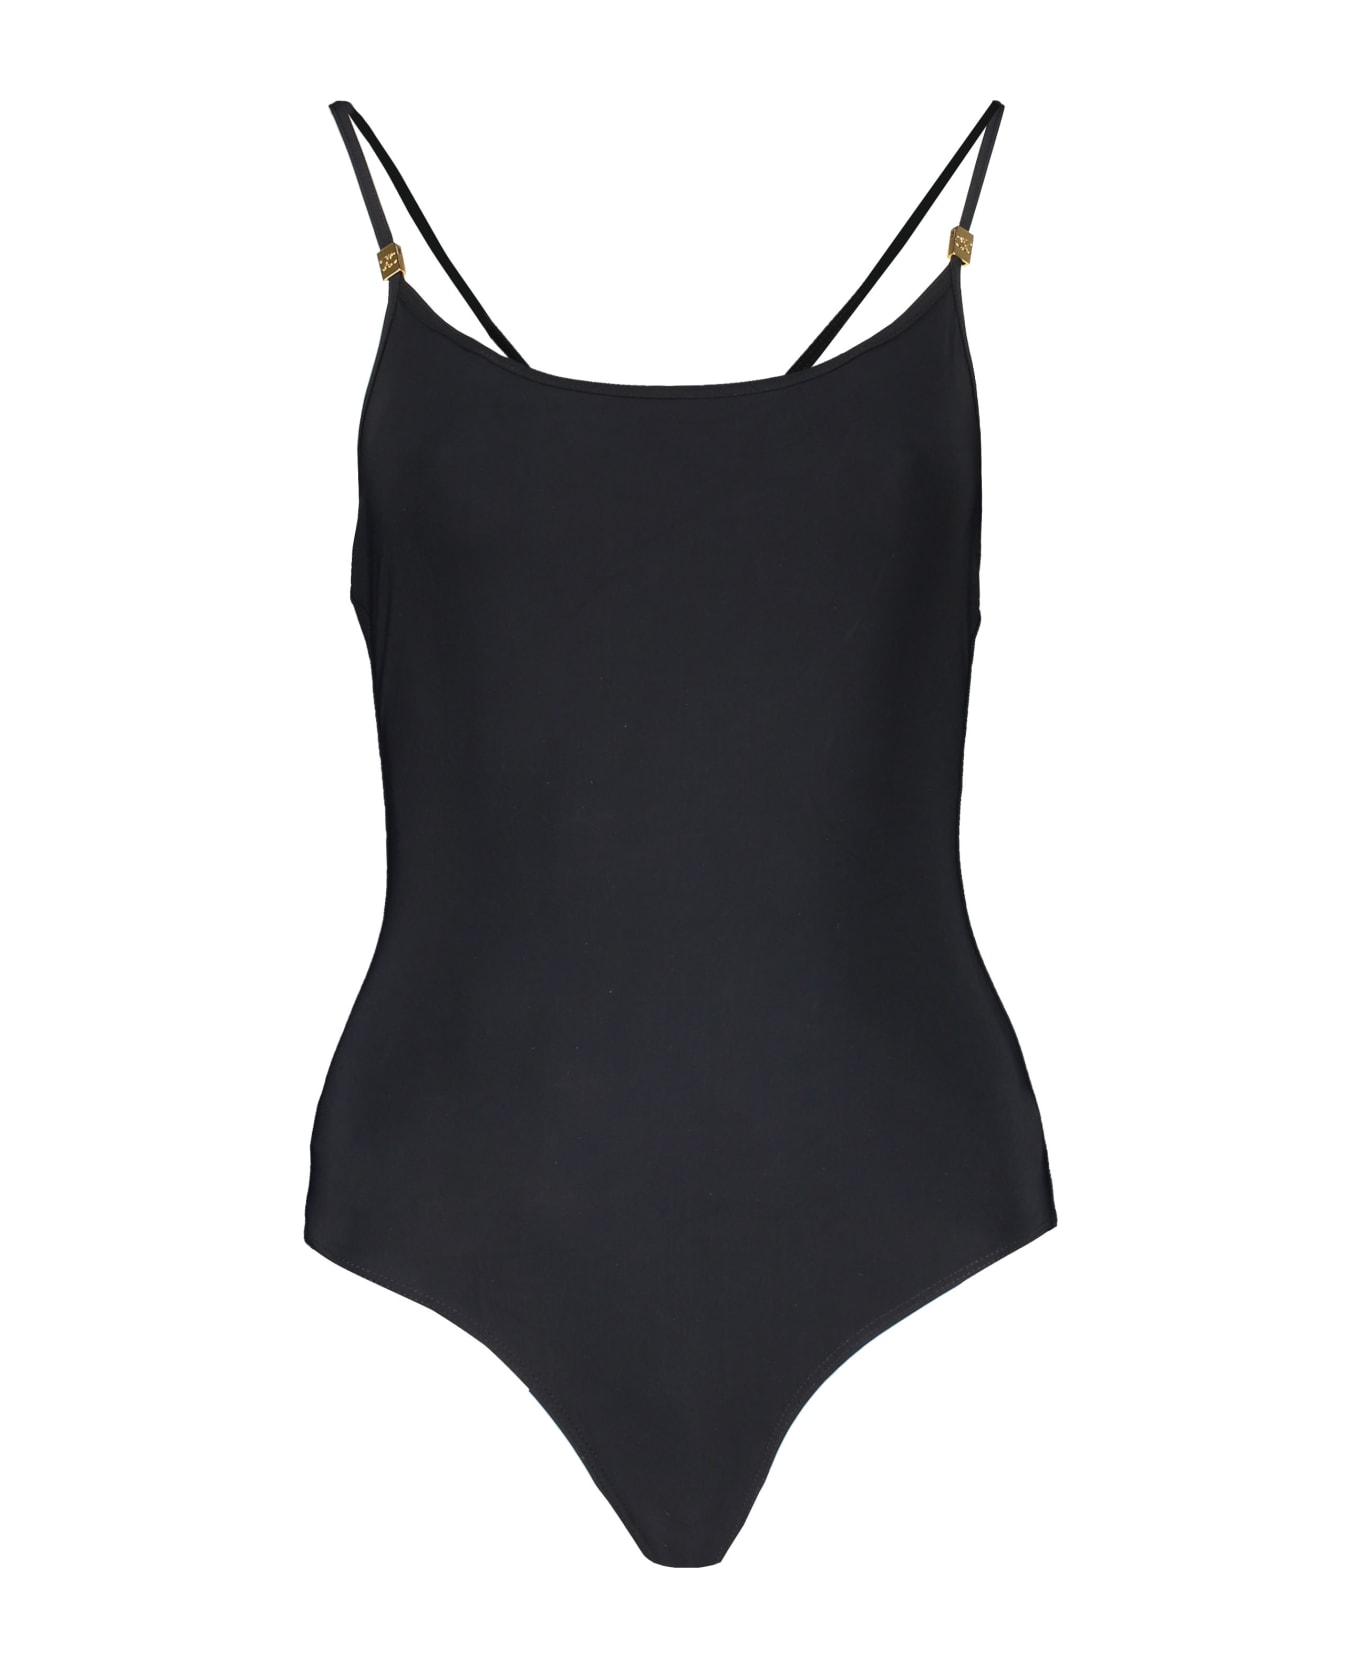 Celine One-piece Swimsuit - black